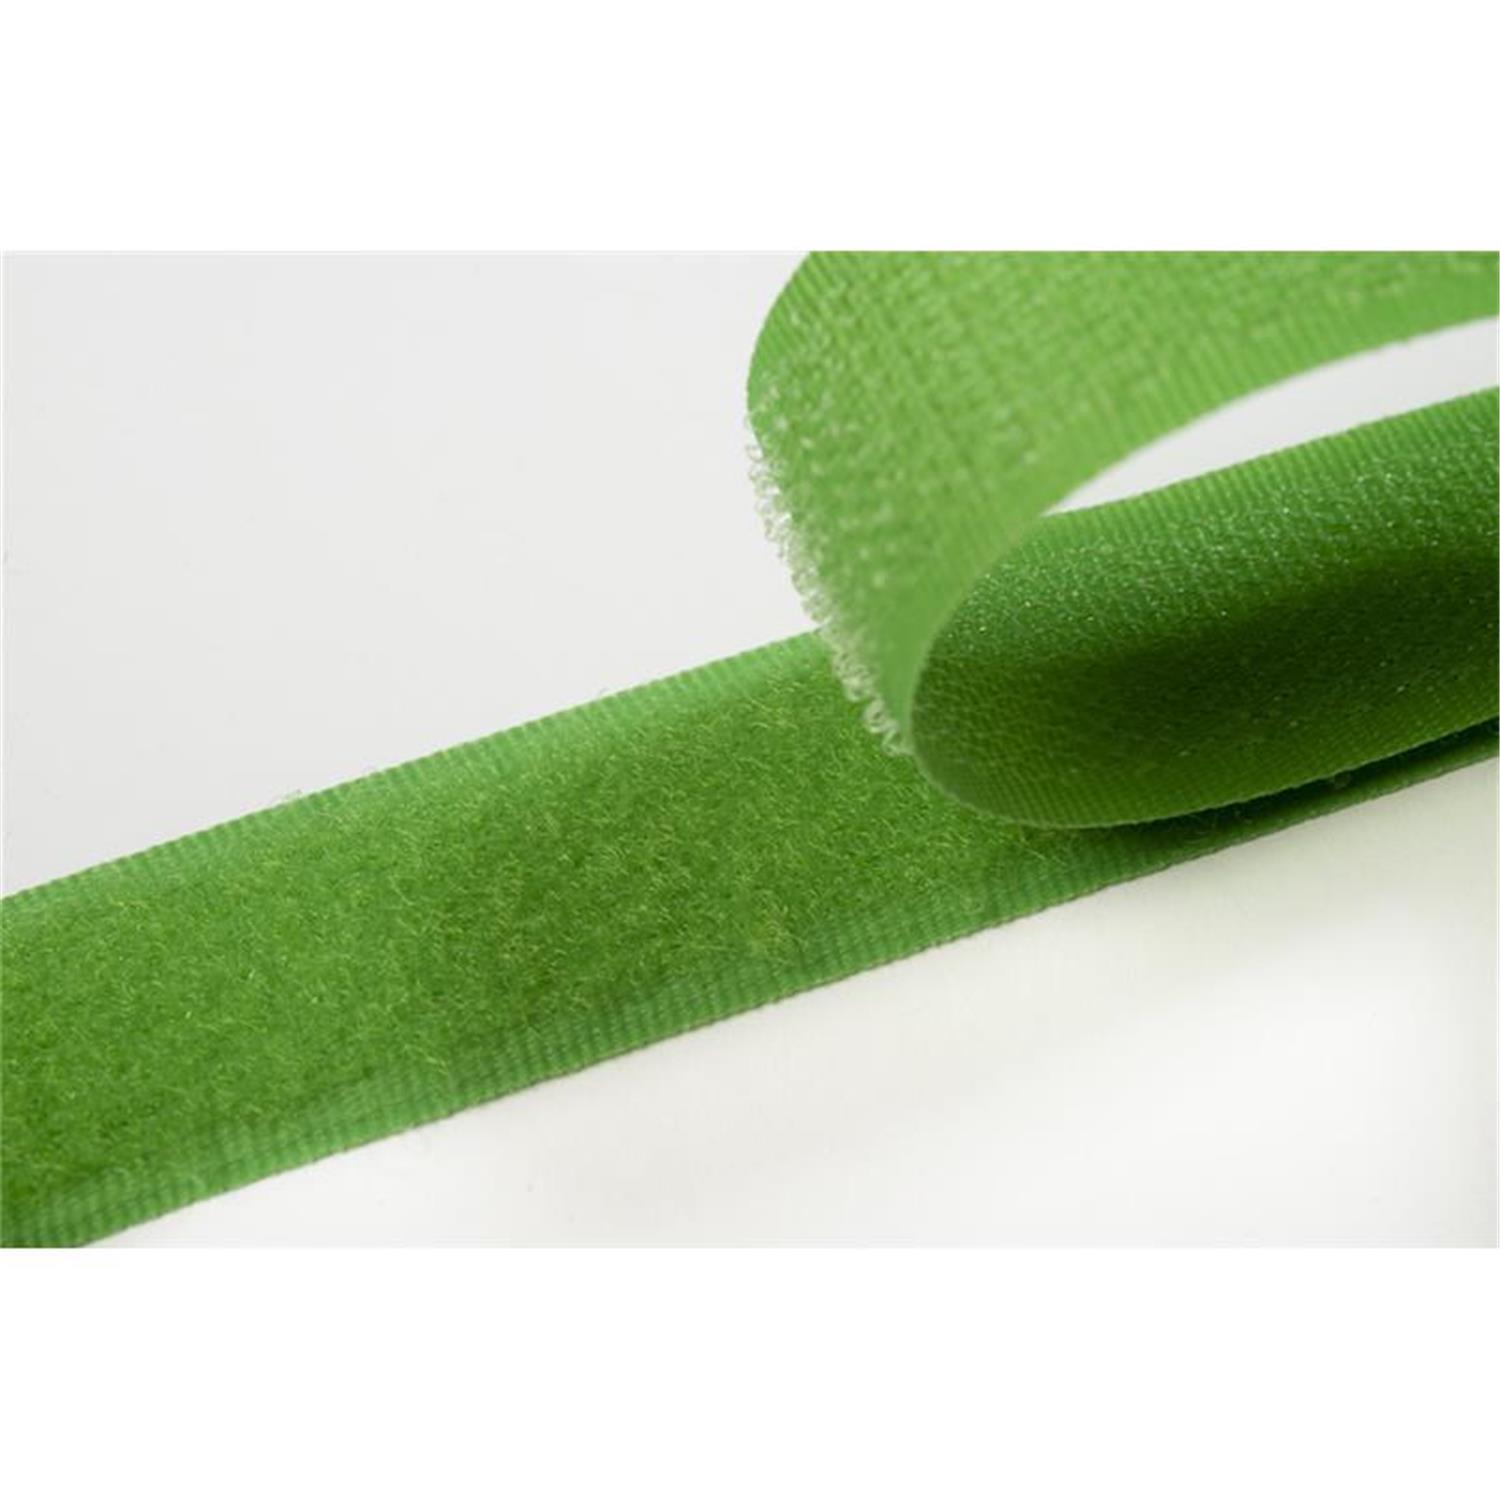 Klettband zum aufnähen, 100 mm, frühlingsgrün #08 1 Meter